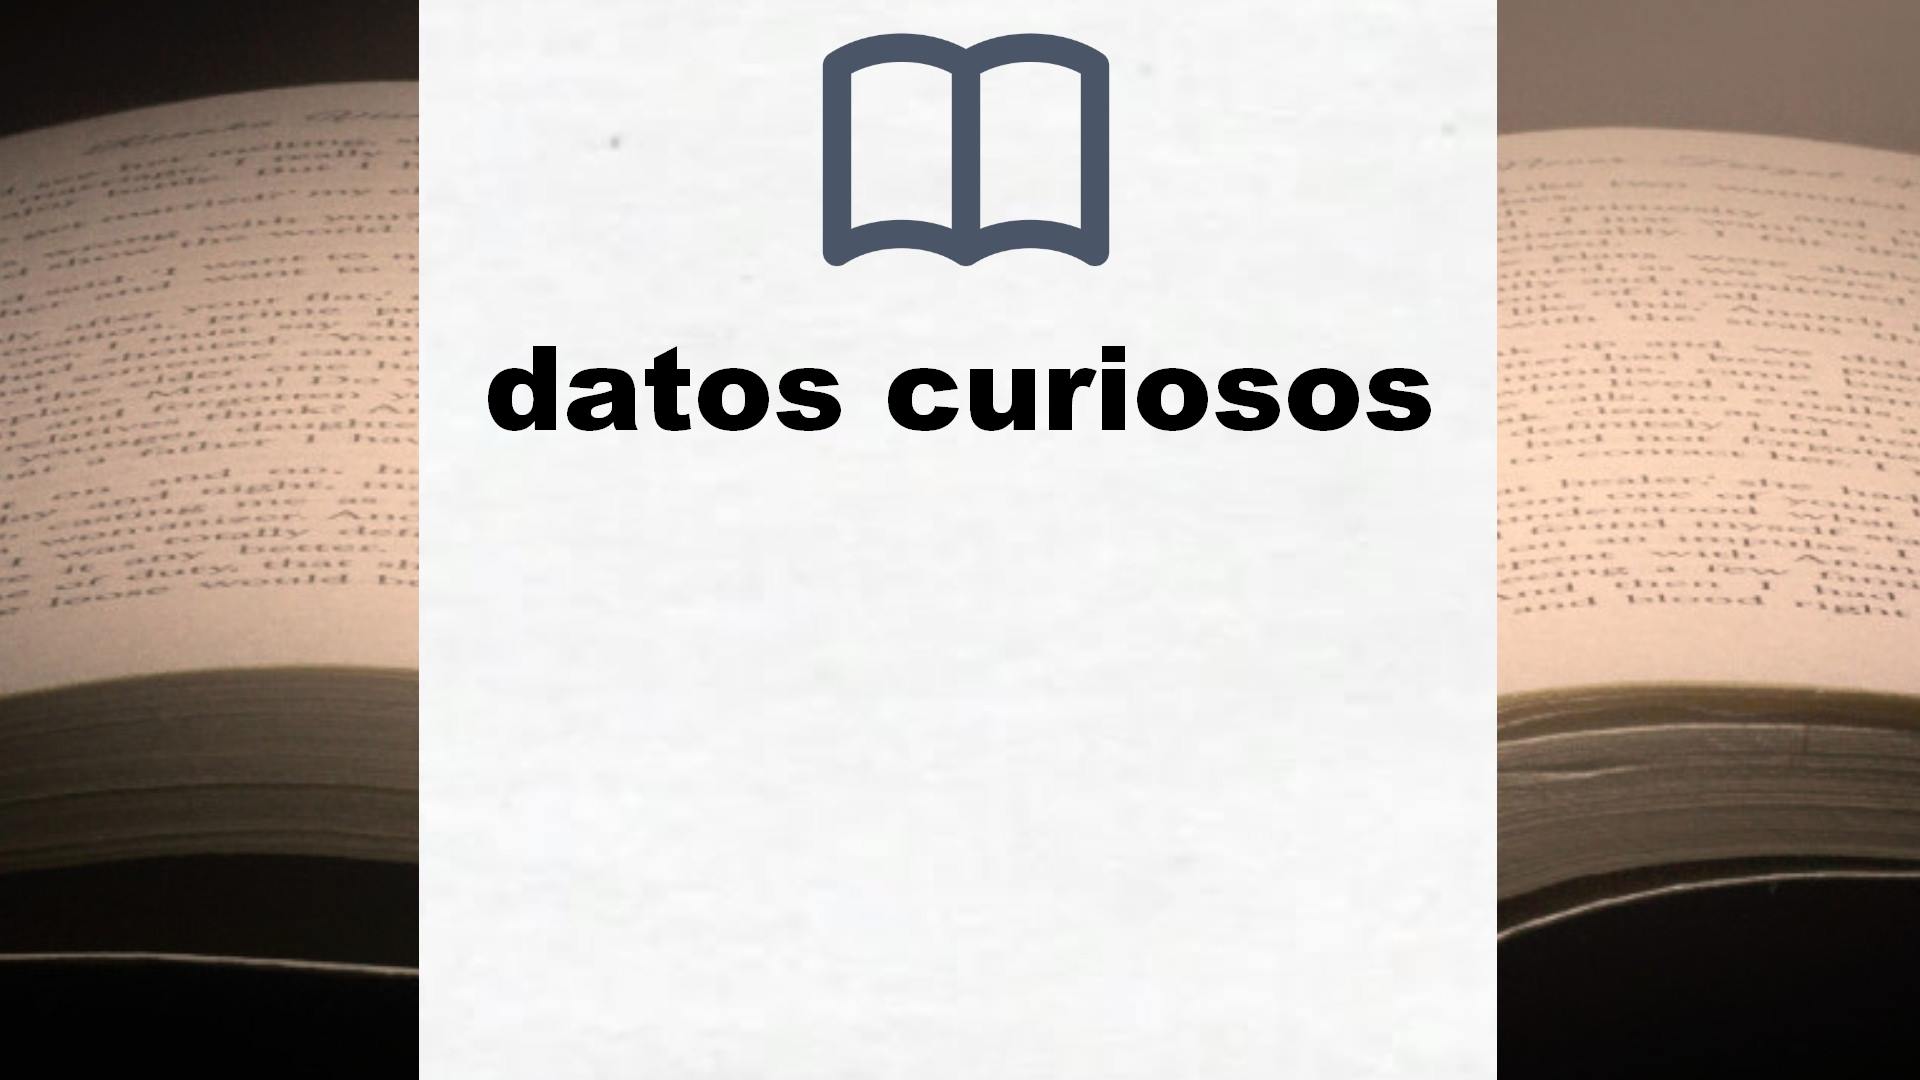 Libros sobre datos curiosos